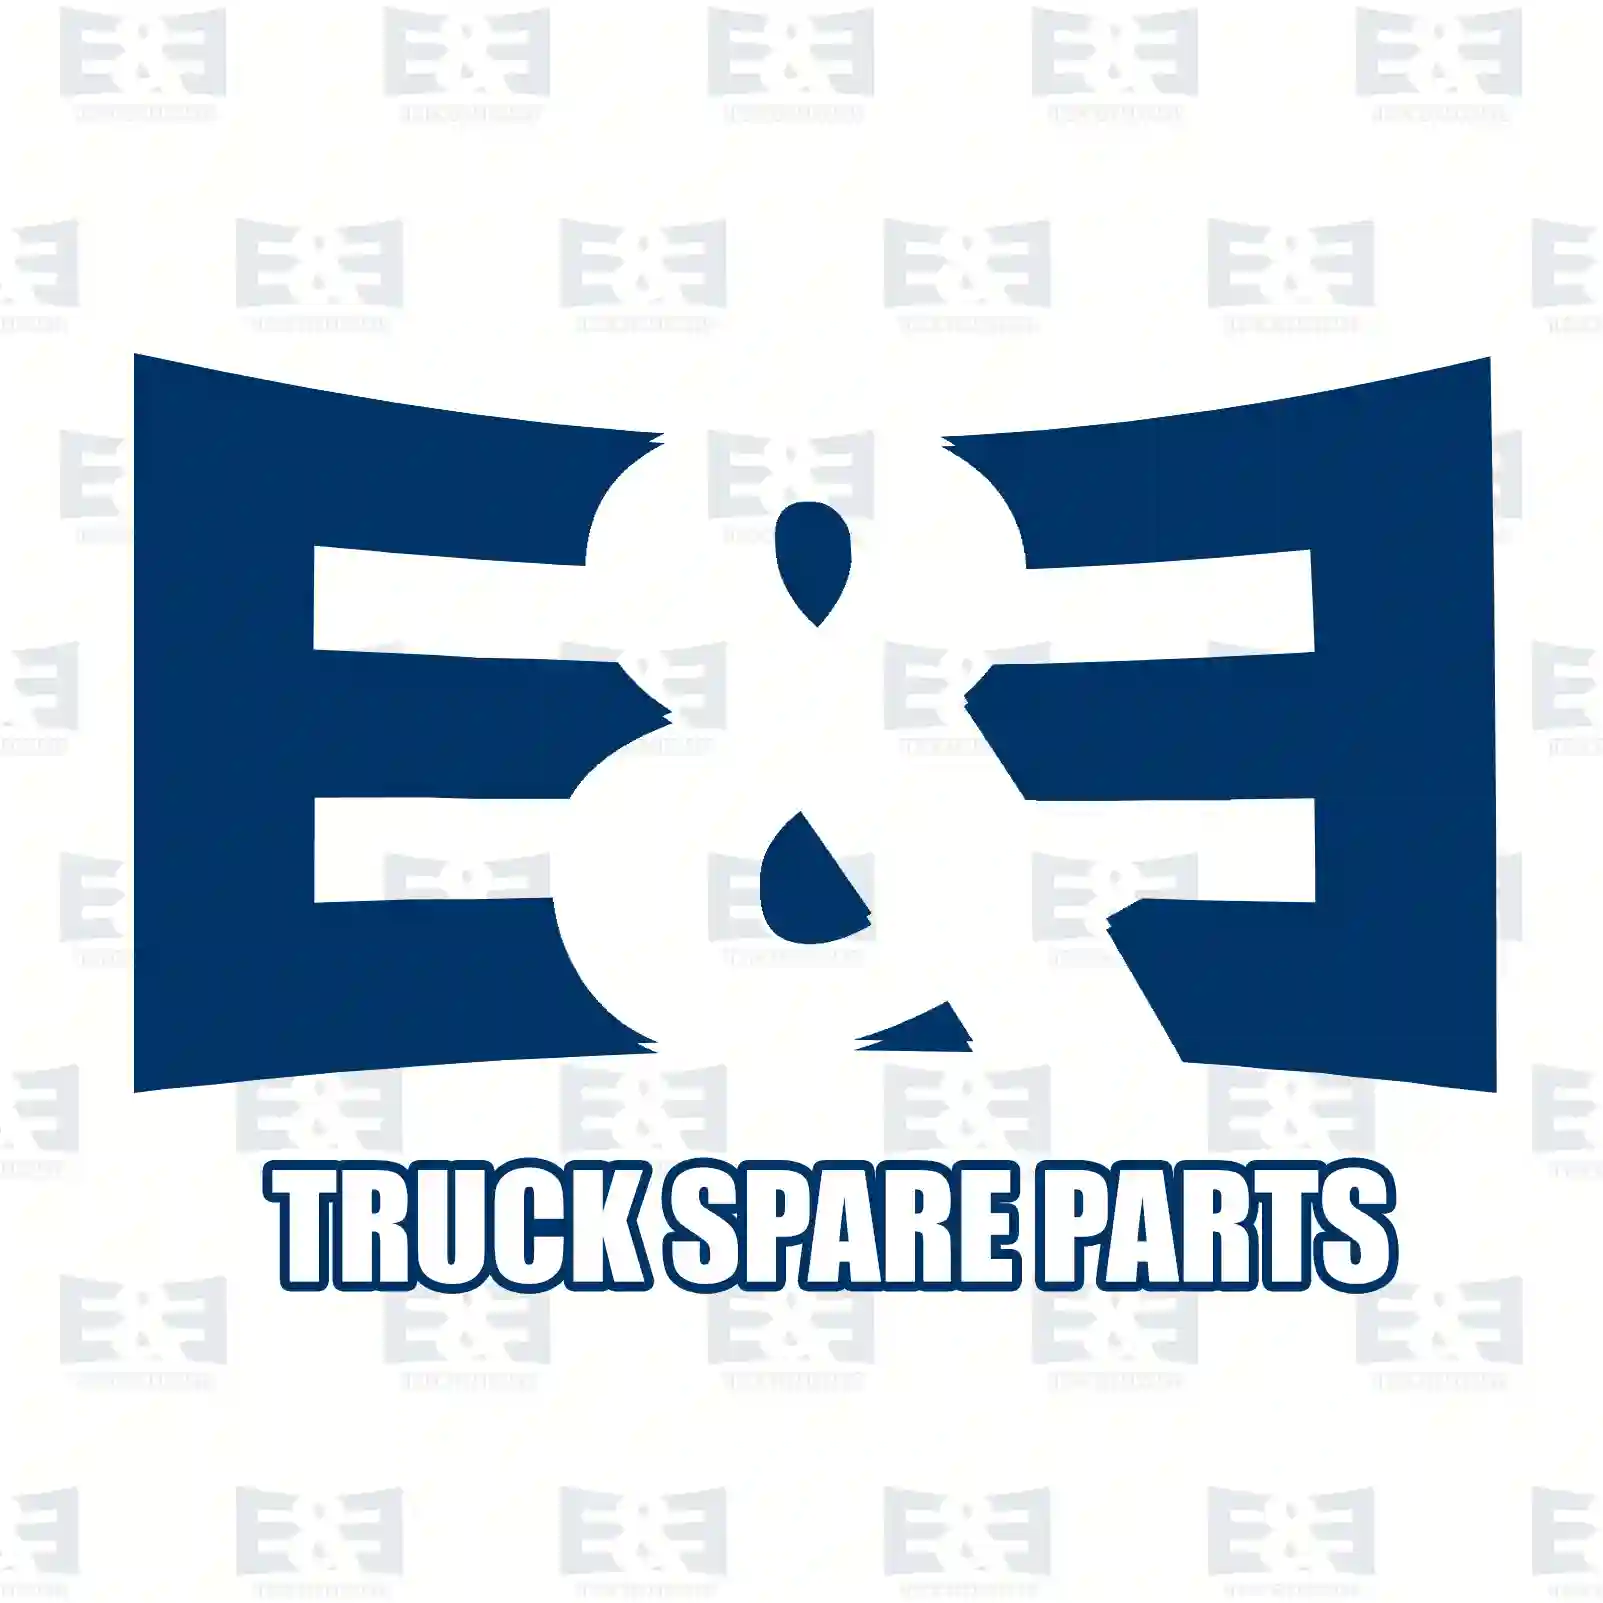 Aluminium washer, 2E2285022, 0229788, 111051, 229788, 02965976, 2965976, 81907110908, 0002680359, 007603018100, 0003208439, 7701008114, 957181, N0138321, N0138326, N138321 ||  2E2285022 E&E Truck Spare Parts | Truck Spare Parts, Auotomotive Spare Parts Aluminium washer, 2E2285022, 0229788, 111051, 229788, 02965976, 2965976, 81907110908, 0002680359, 007603018100, 0003208439, 7701008114, 957181, N0138321, N0138326, N138321 ||  2E2285022 E&E Truck Spare Parts | Truck Spare Parts, Auotomotive Spare Parts